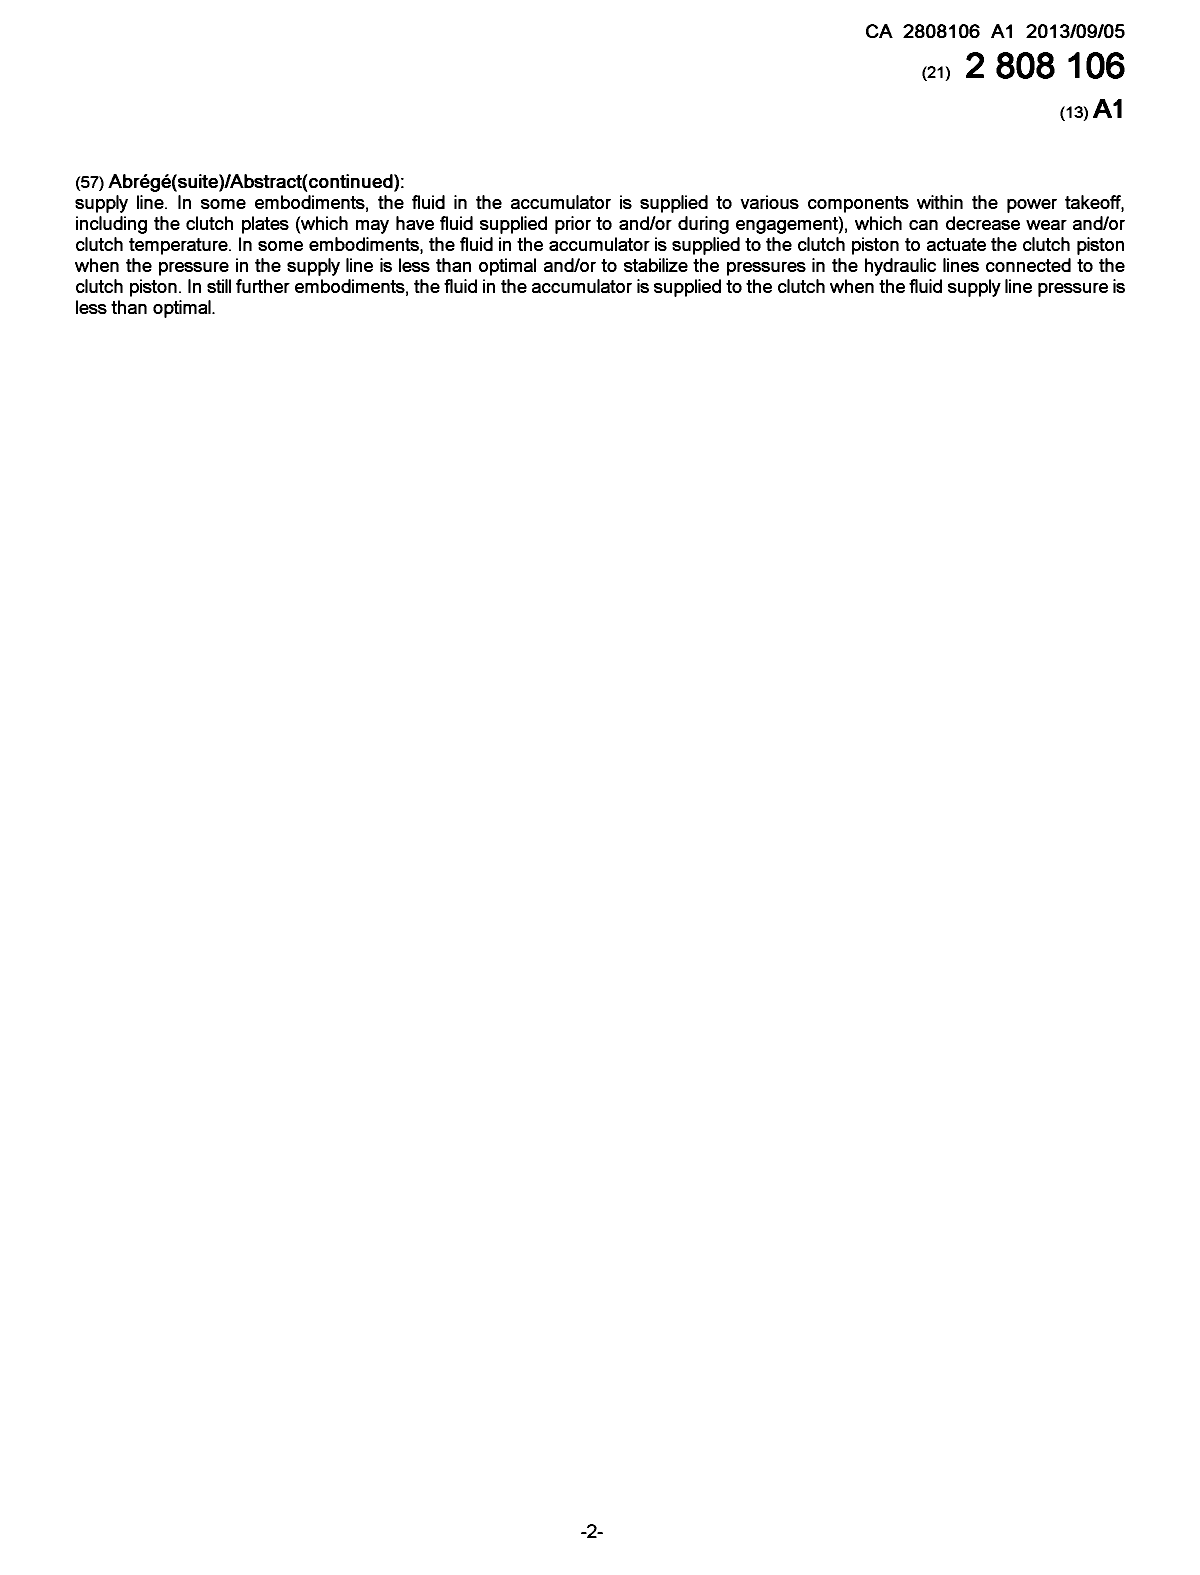 Document de brevet canadien 2808106. Page couverture 20121209. Image 2 de 2